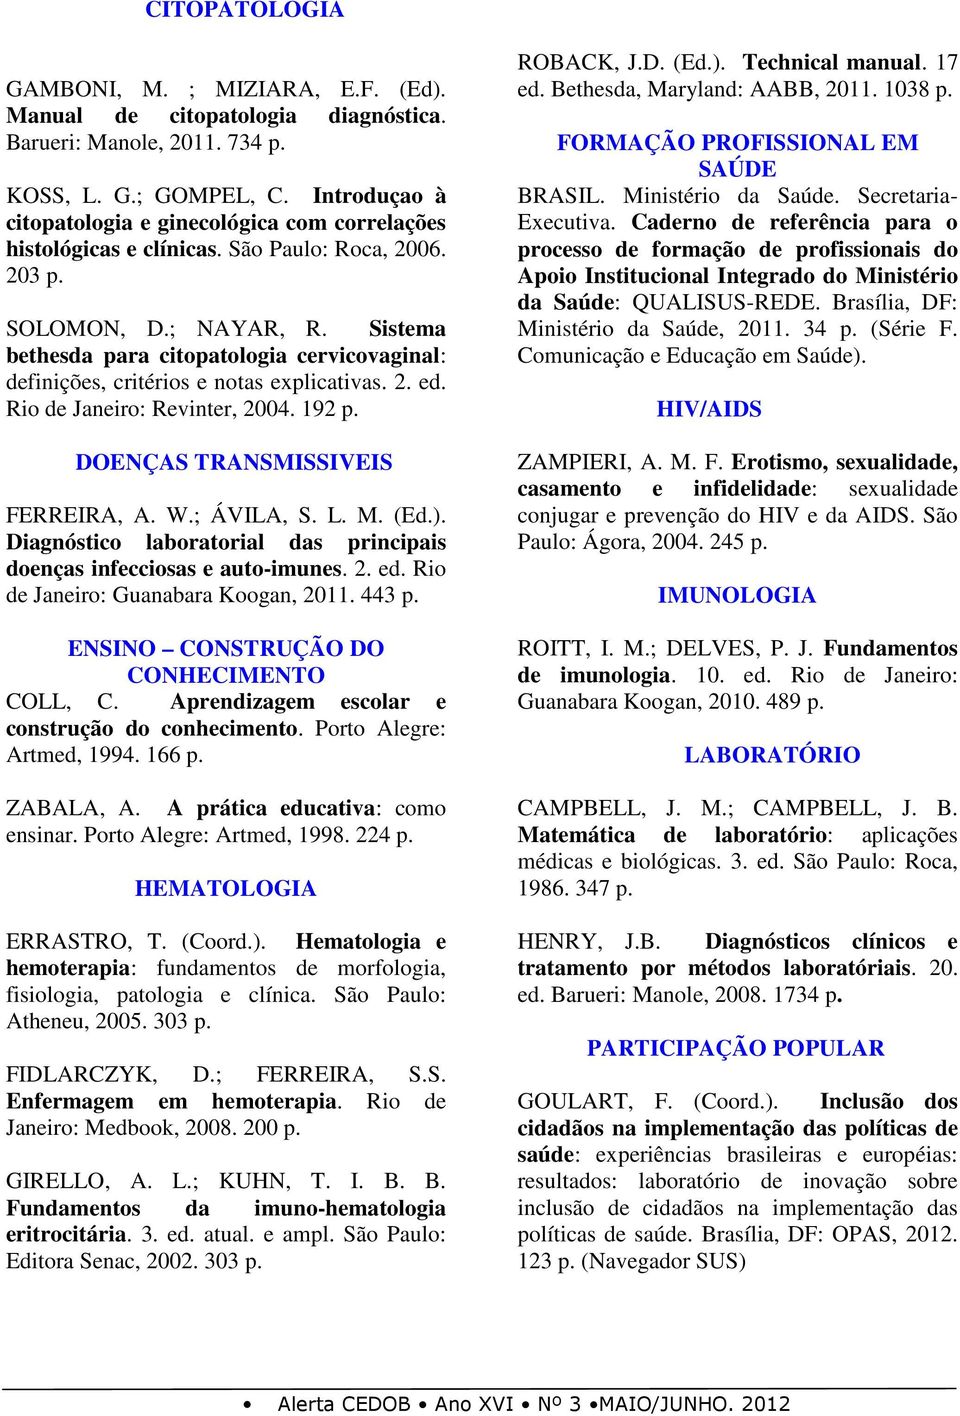 Sistema bethesda para citopatologia cervicovaginal: definições, critérios e notas explicativas. 2. ed. Rio de Janeiro: Revinter, 2004. 192 p. DOENÇAS TRANSMISSIVEIS FERREIRA, A. W.; ÁVILA, S. L. M.